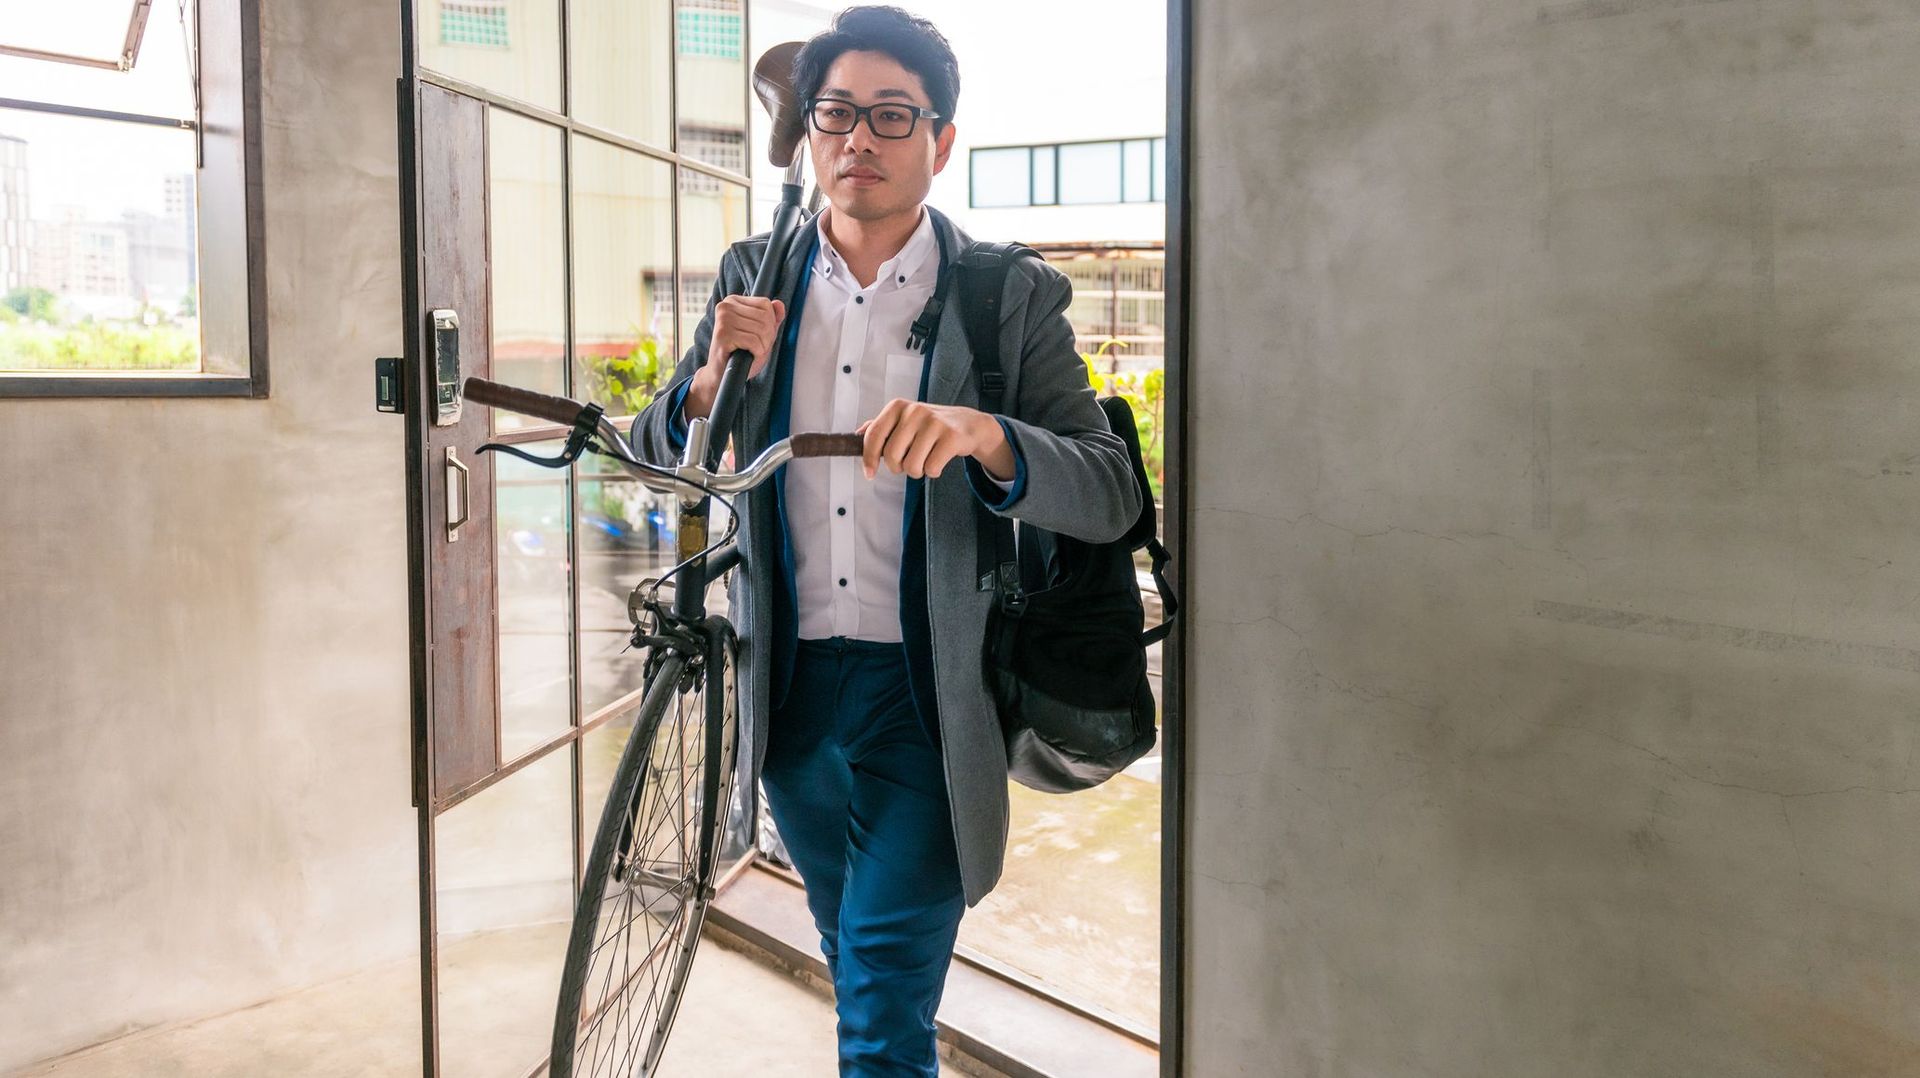 Pistes surélevées, trafic régulé, parkings robotisés : ces innovations venues d'Asie vont simplifier la vie des cyclistes